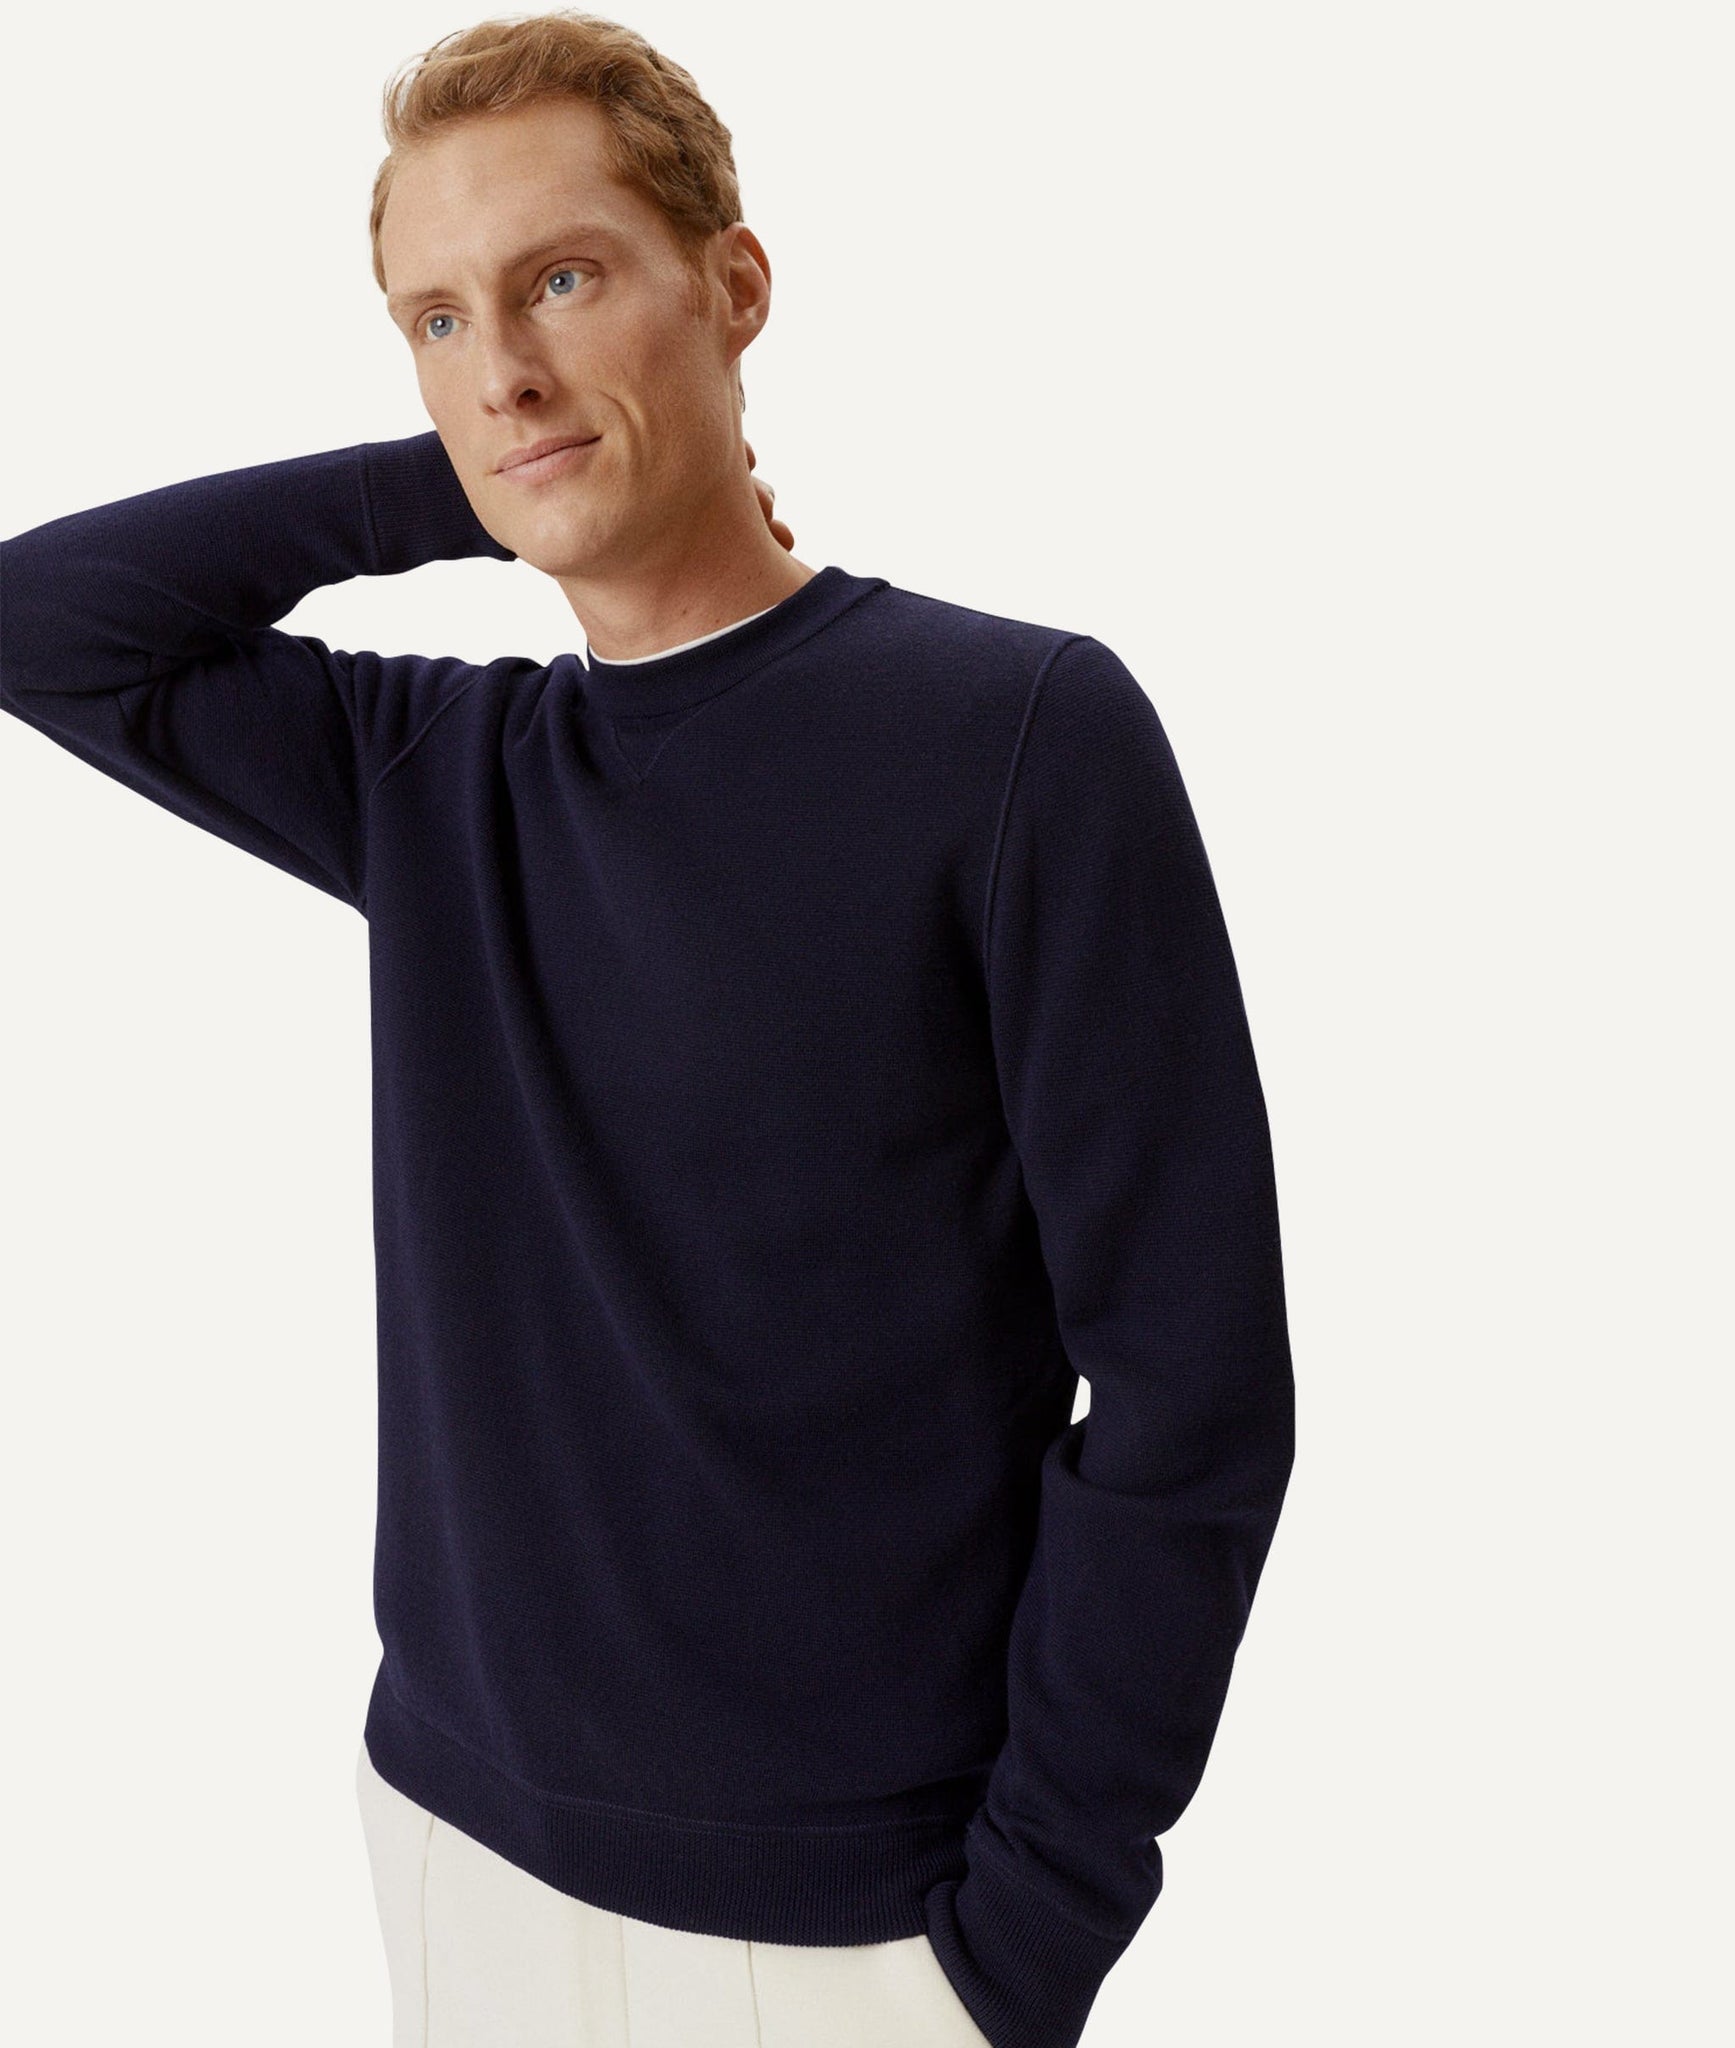 The Merino Wool Sweatshirt